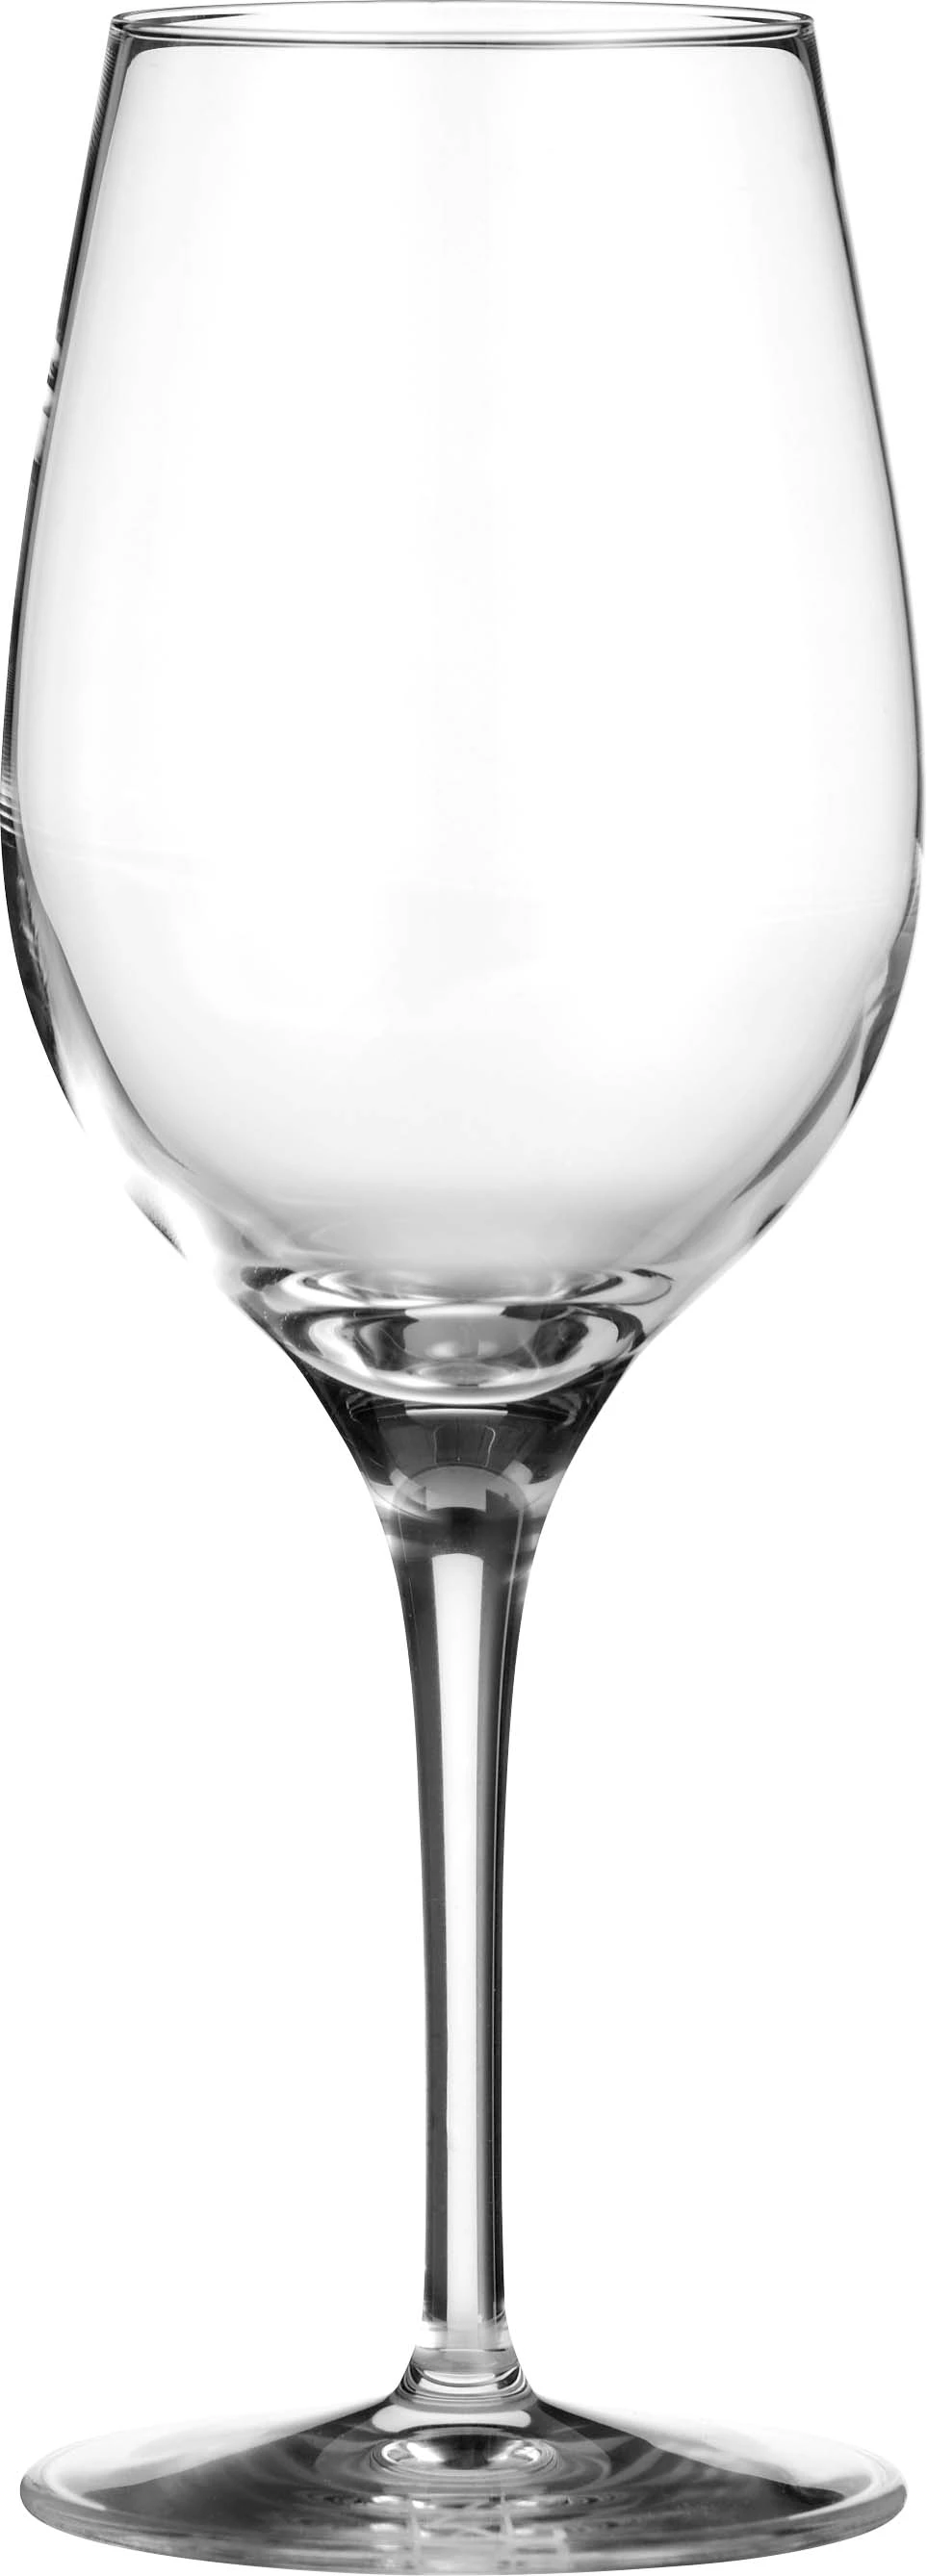 Zenz Penelope vinglas, 39 cl, H21 cm